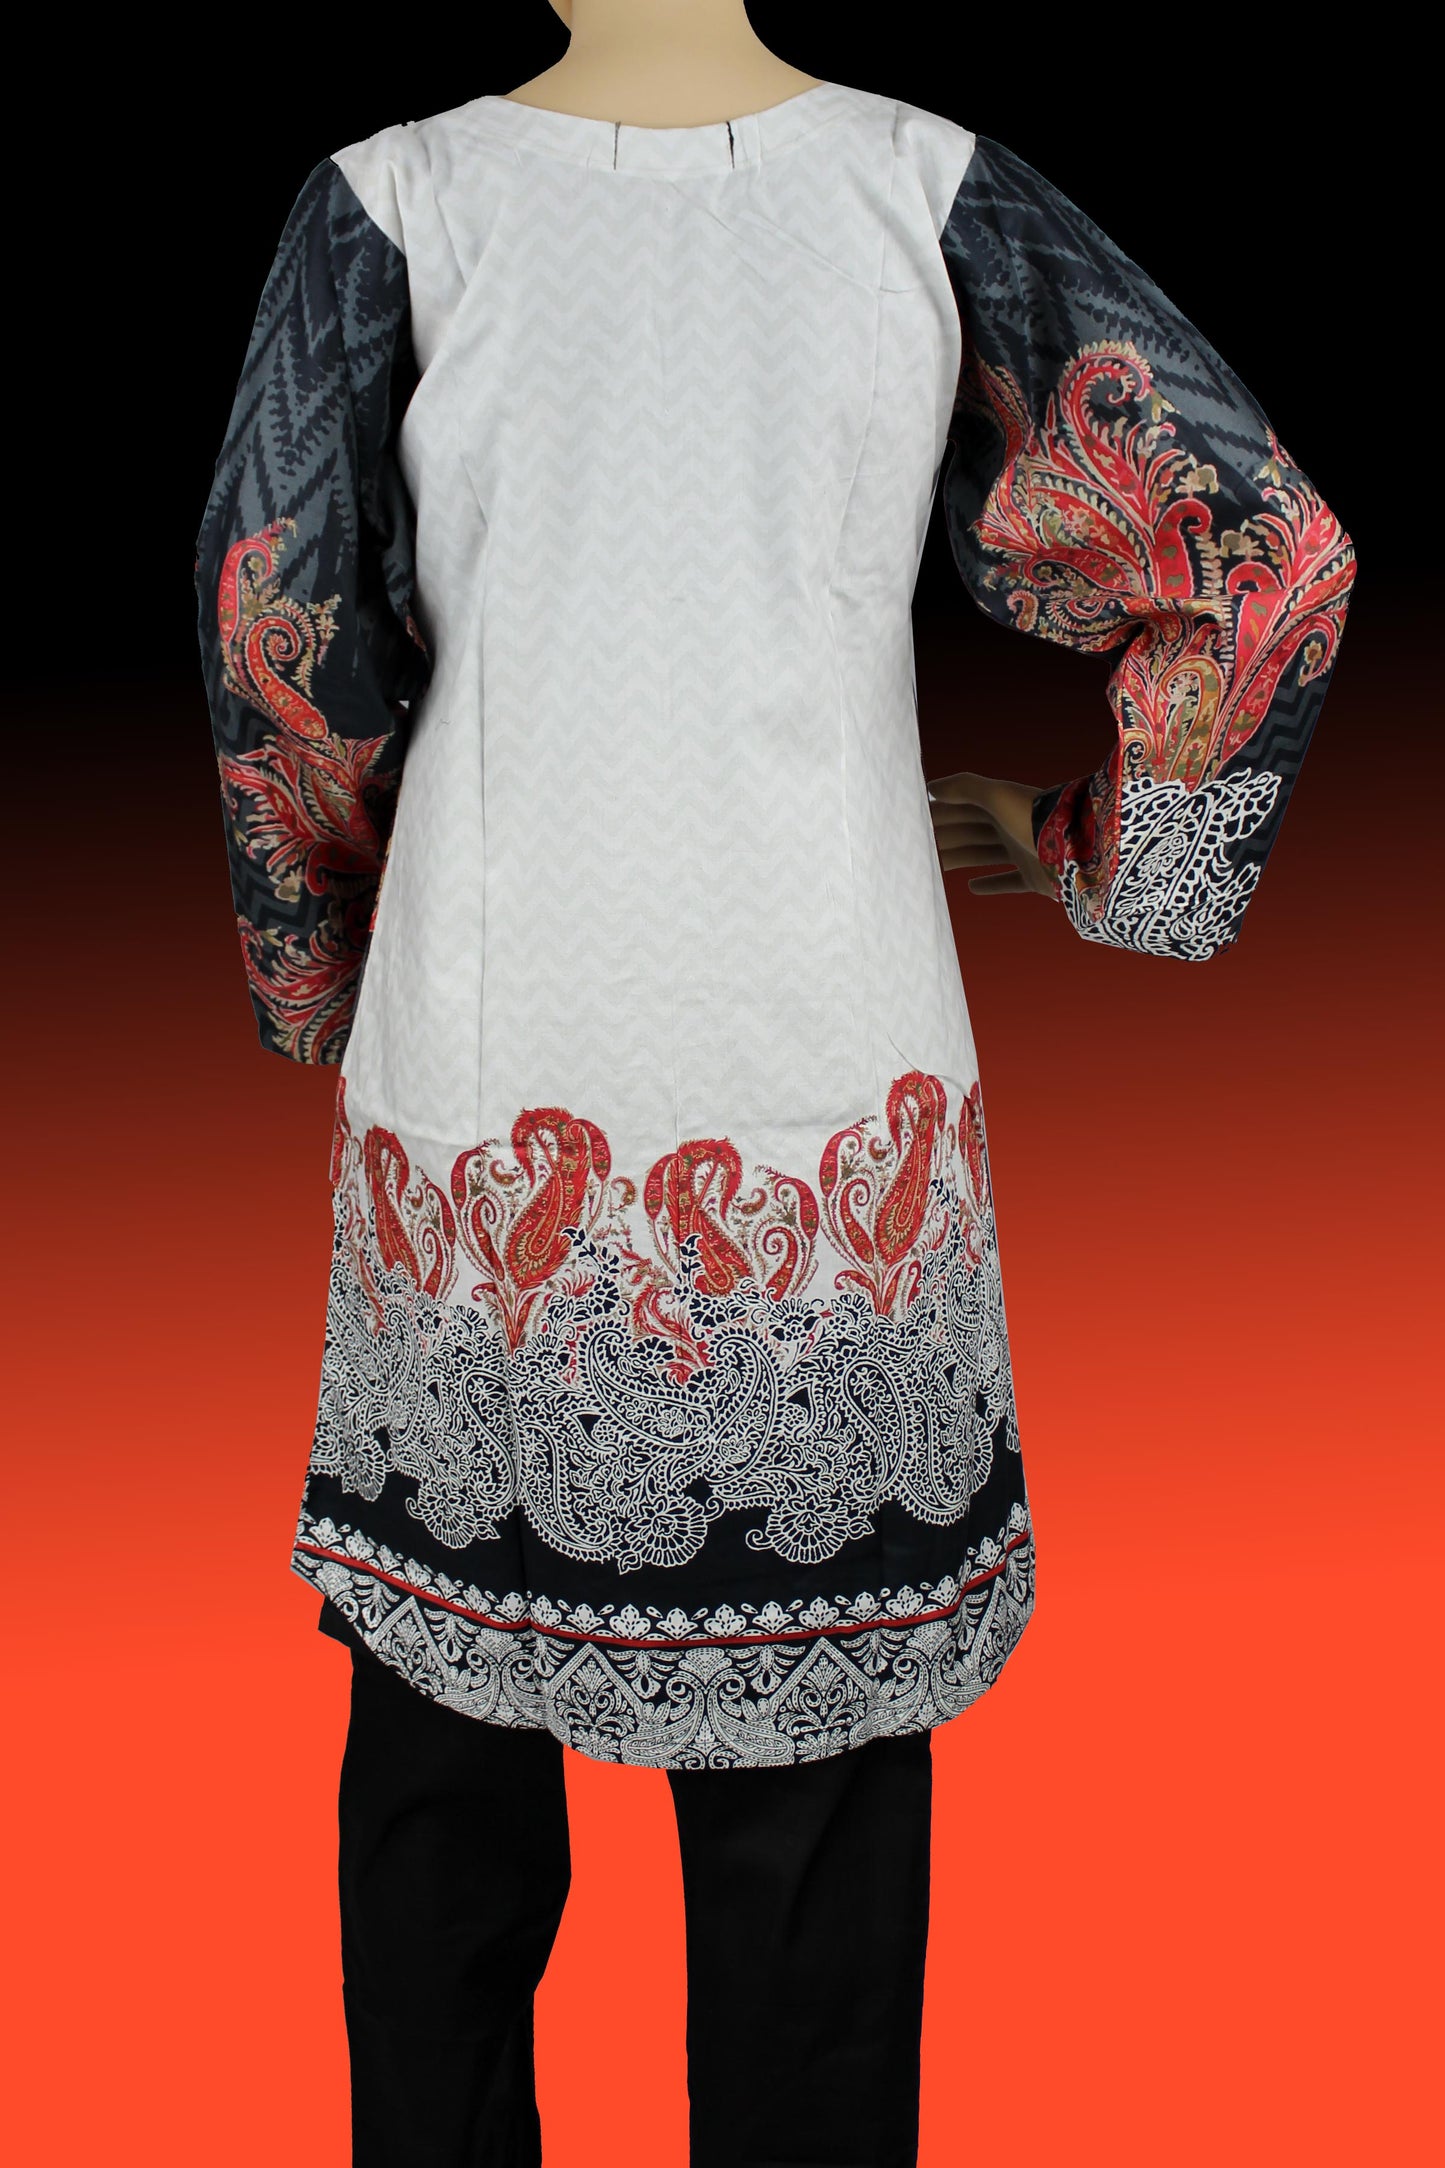 3-teilig - Baumwolle - Kleid - Digitaldruck - Schwarz - Weiß - 3100